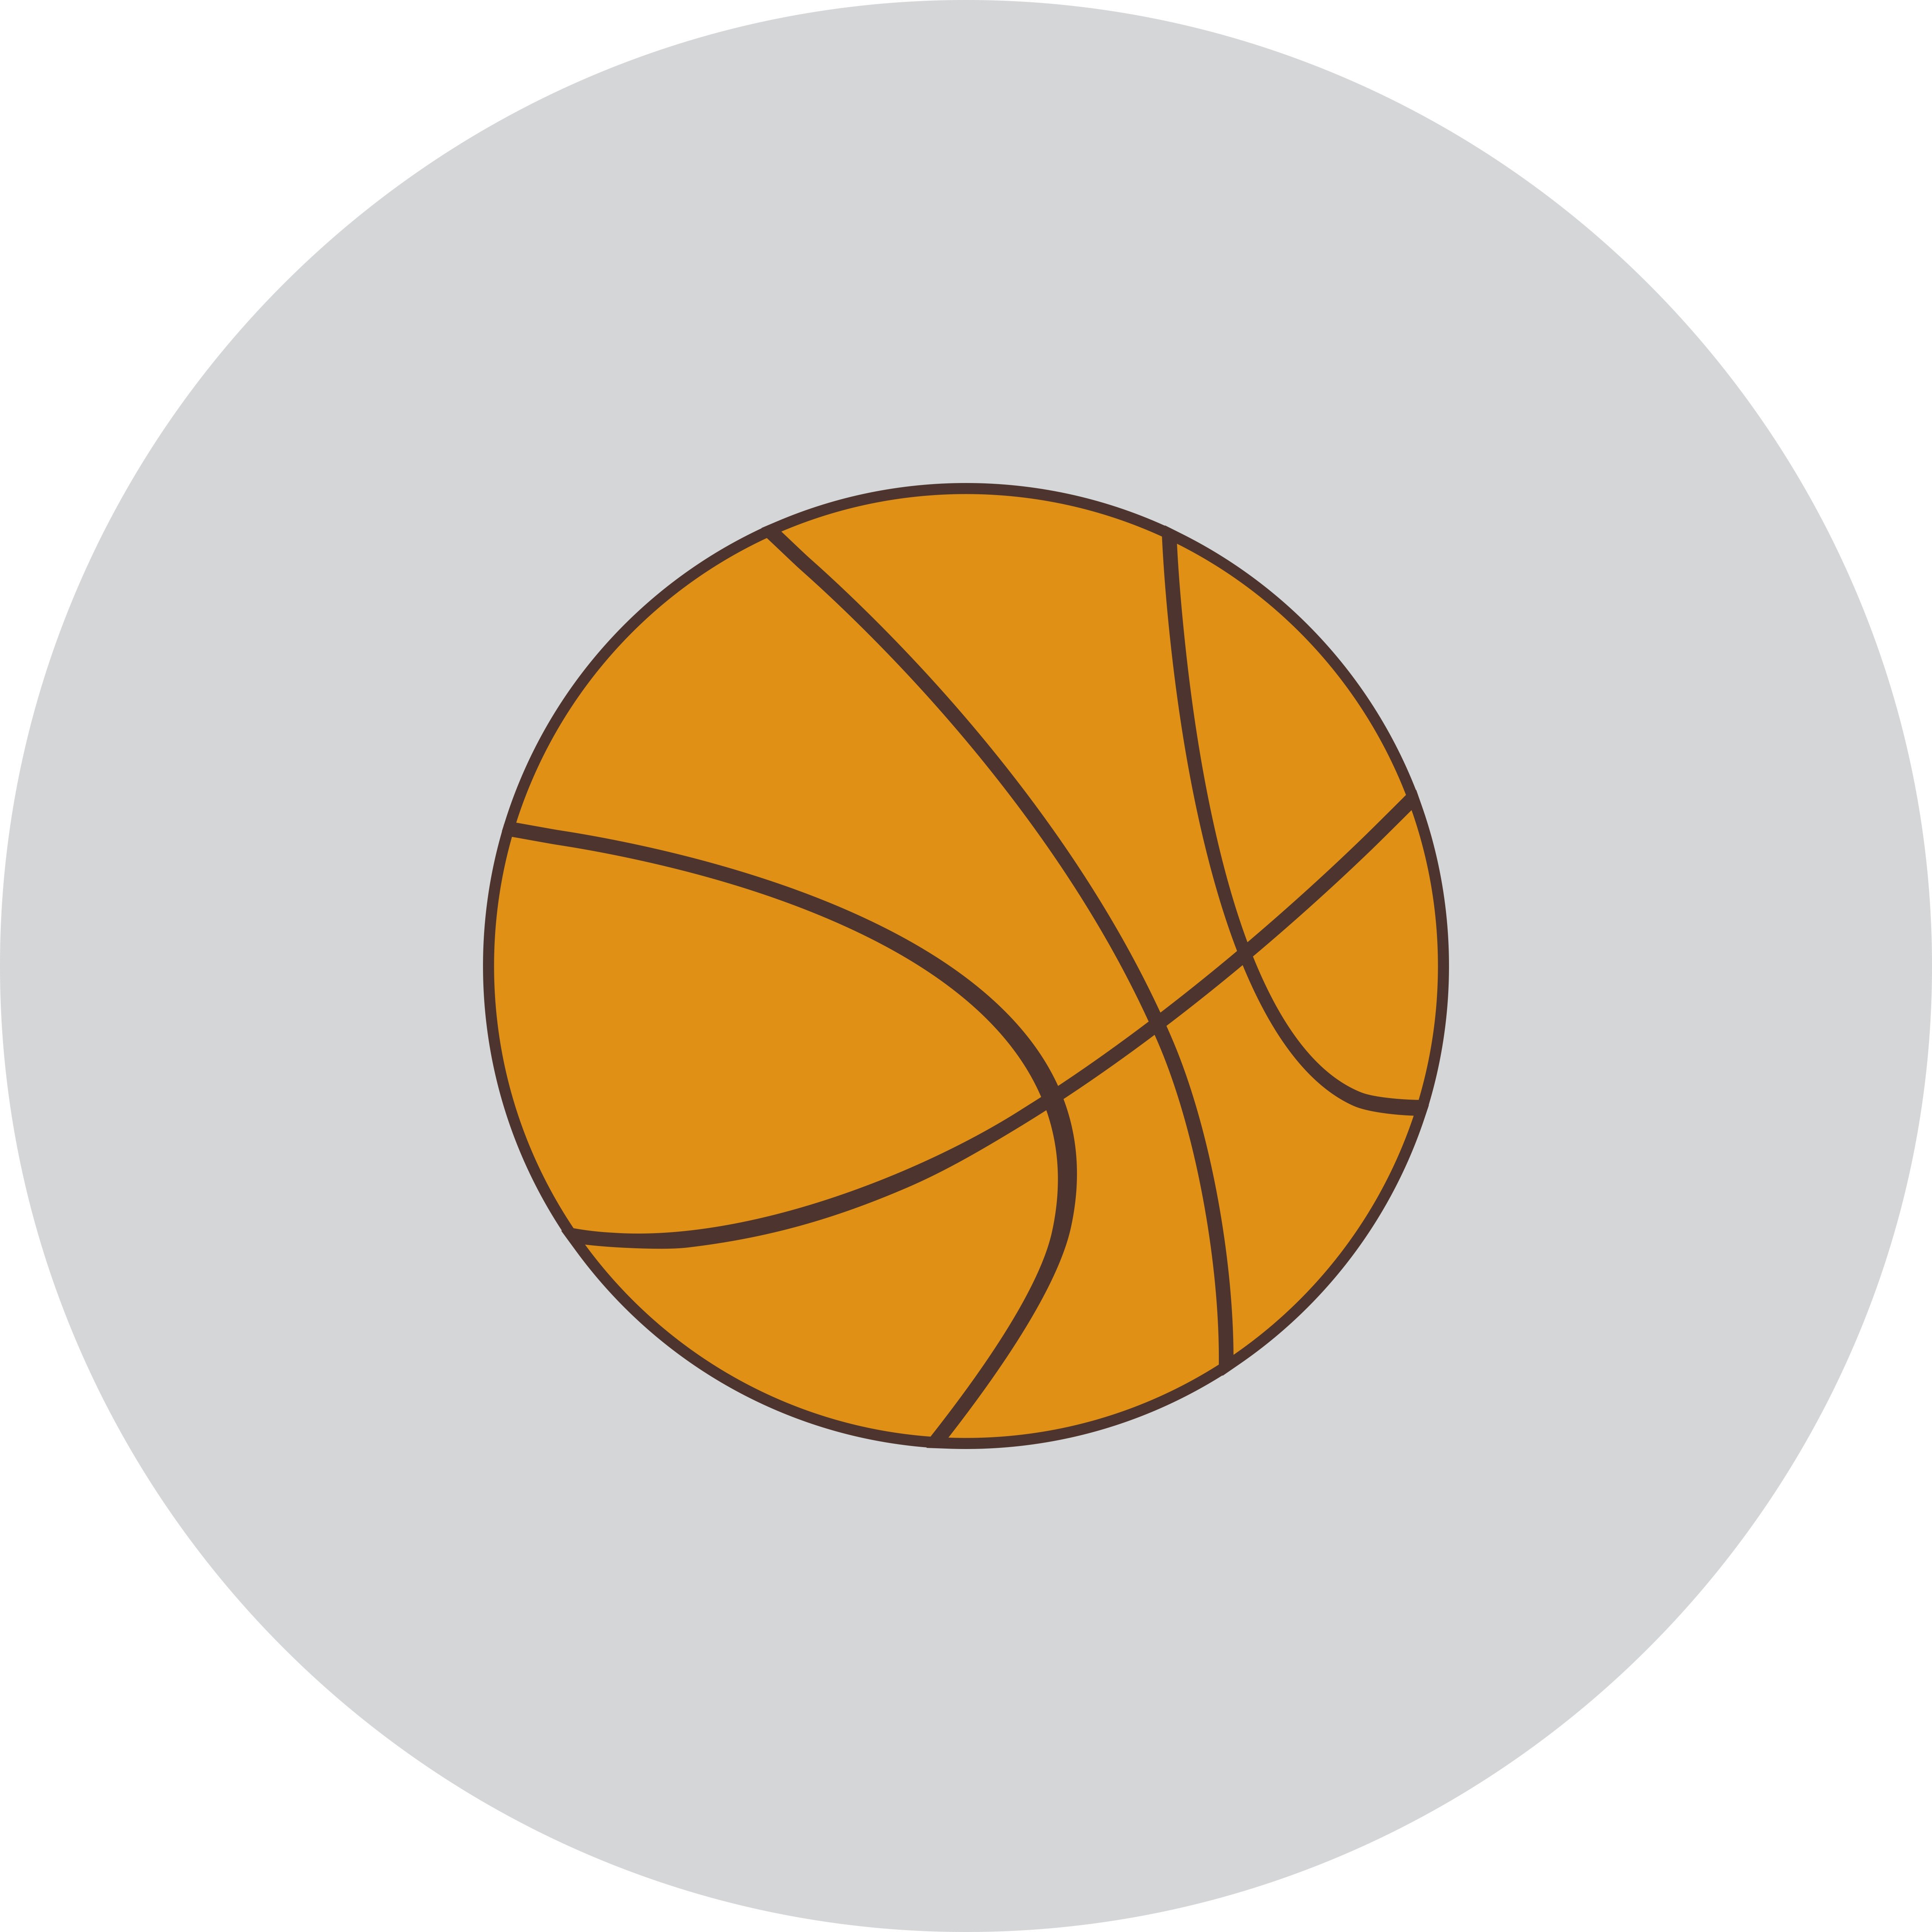 Баскетбольный мяч в радиальном баскетболе